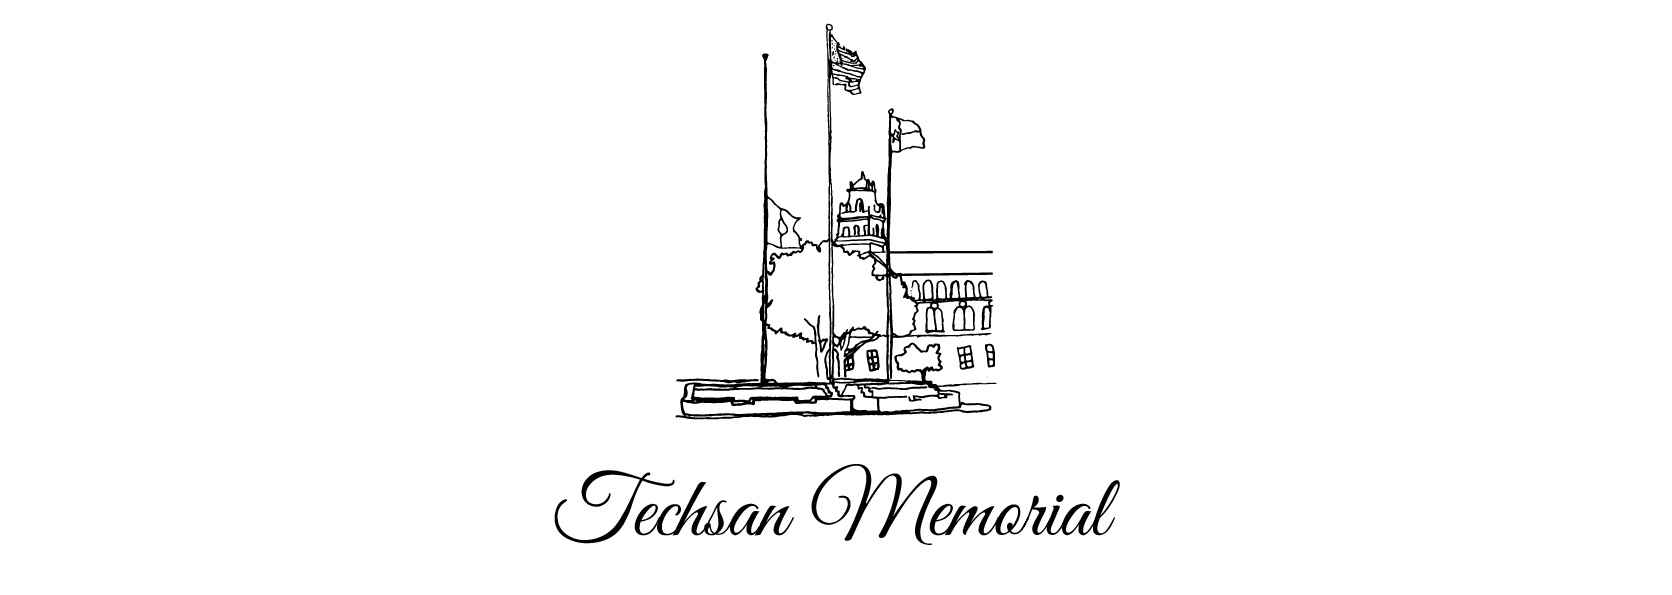 Techsan Memorial logo